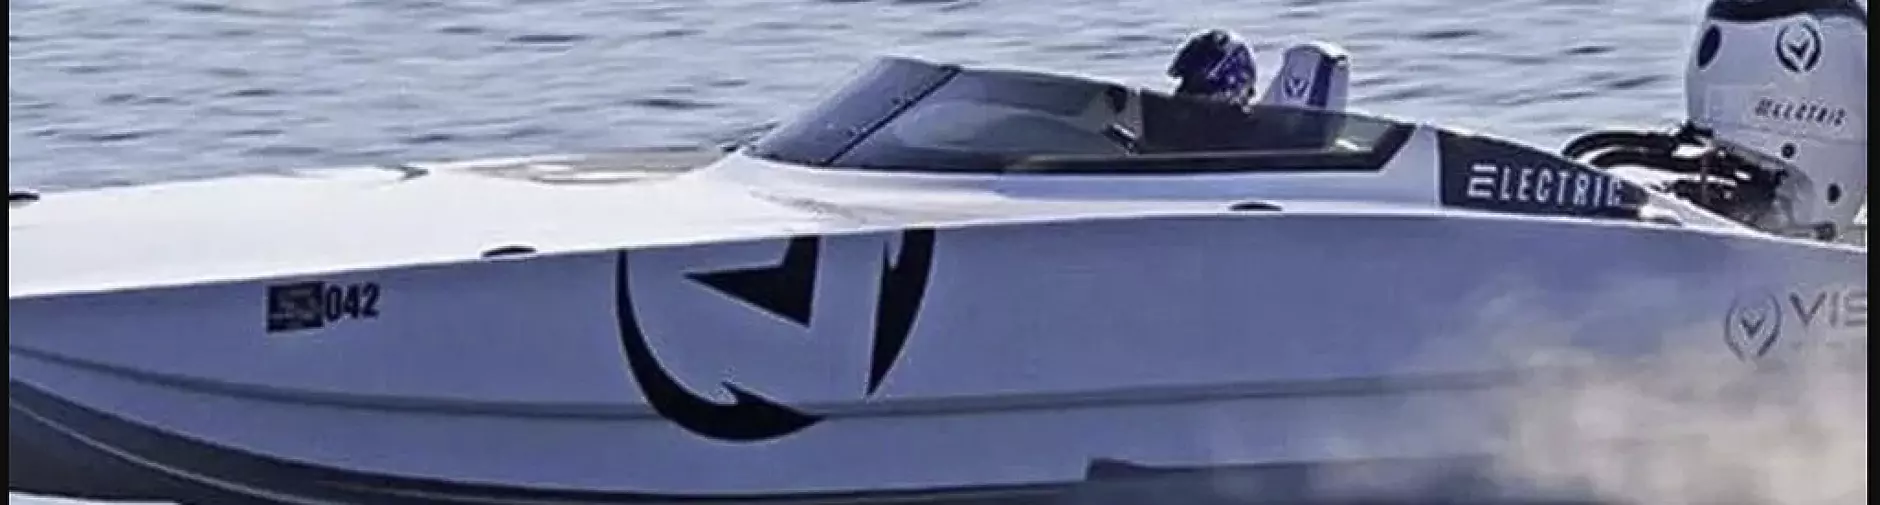 Vision Marine V32 е най-бързата електрическа състезателна лодка